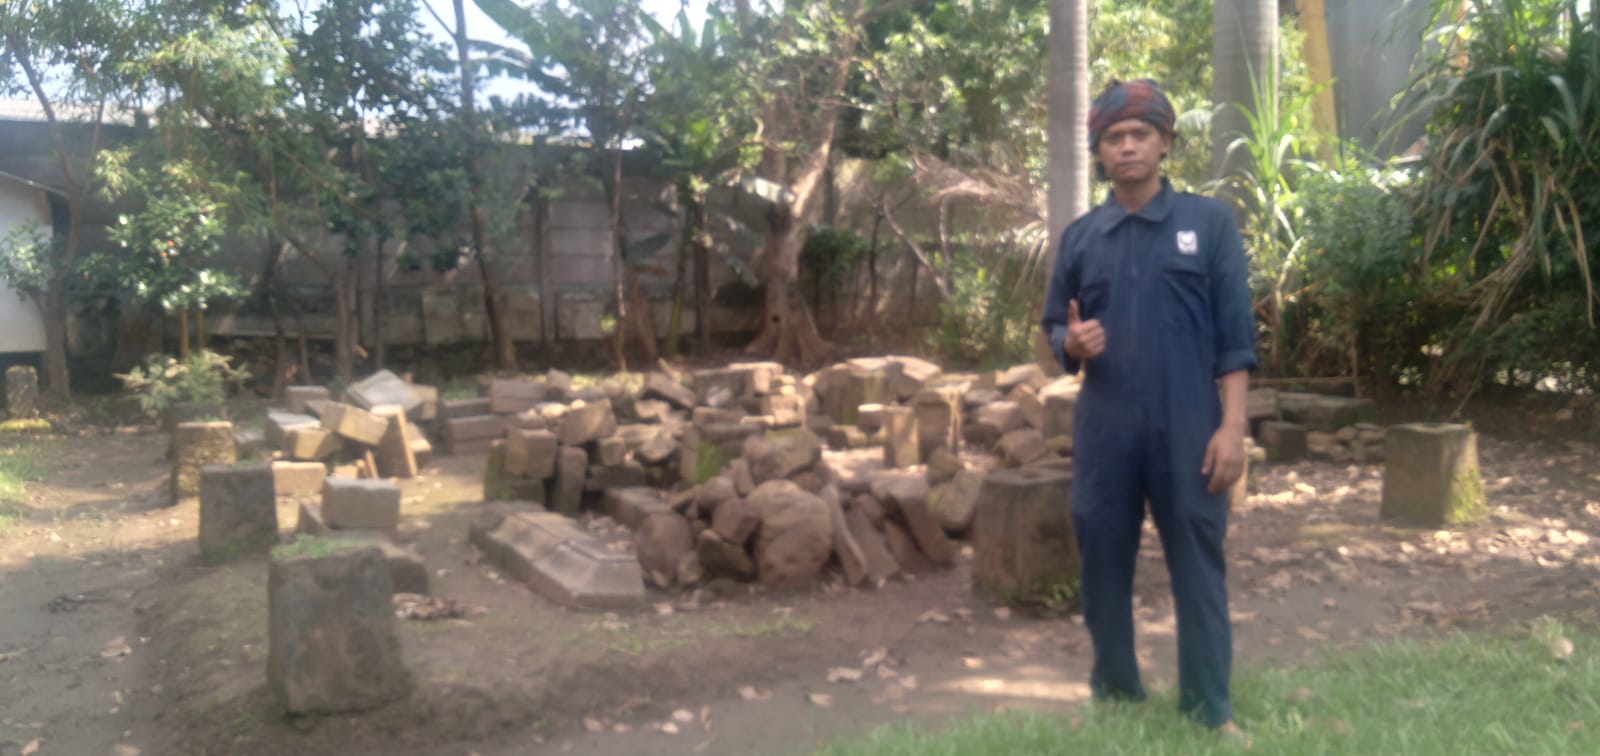 Penjaga sekaligus pengurus temuan batu dari abad ke-6 Candi Bojong Menje, Dadang Nugraha di Desa Cangkuang, Kecamatan Rancaekek, Kabupaten Bandung. (Yanuar/Jabar Ekspres)